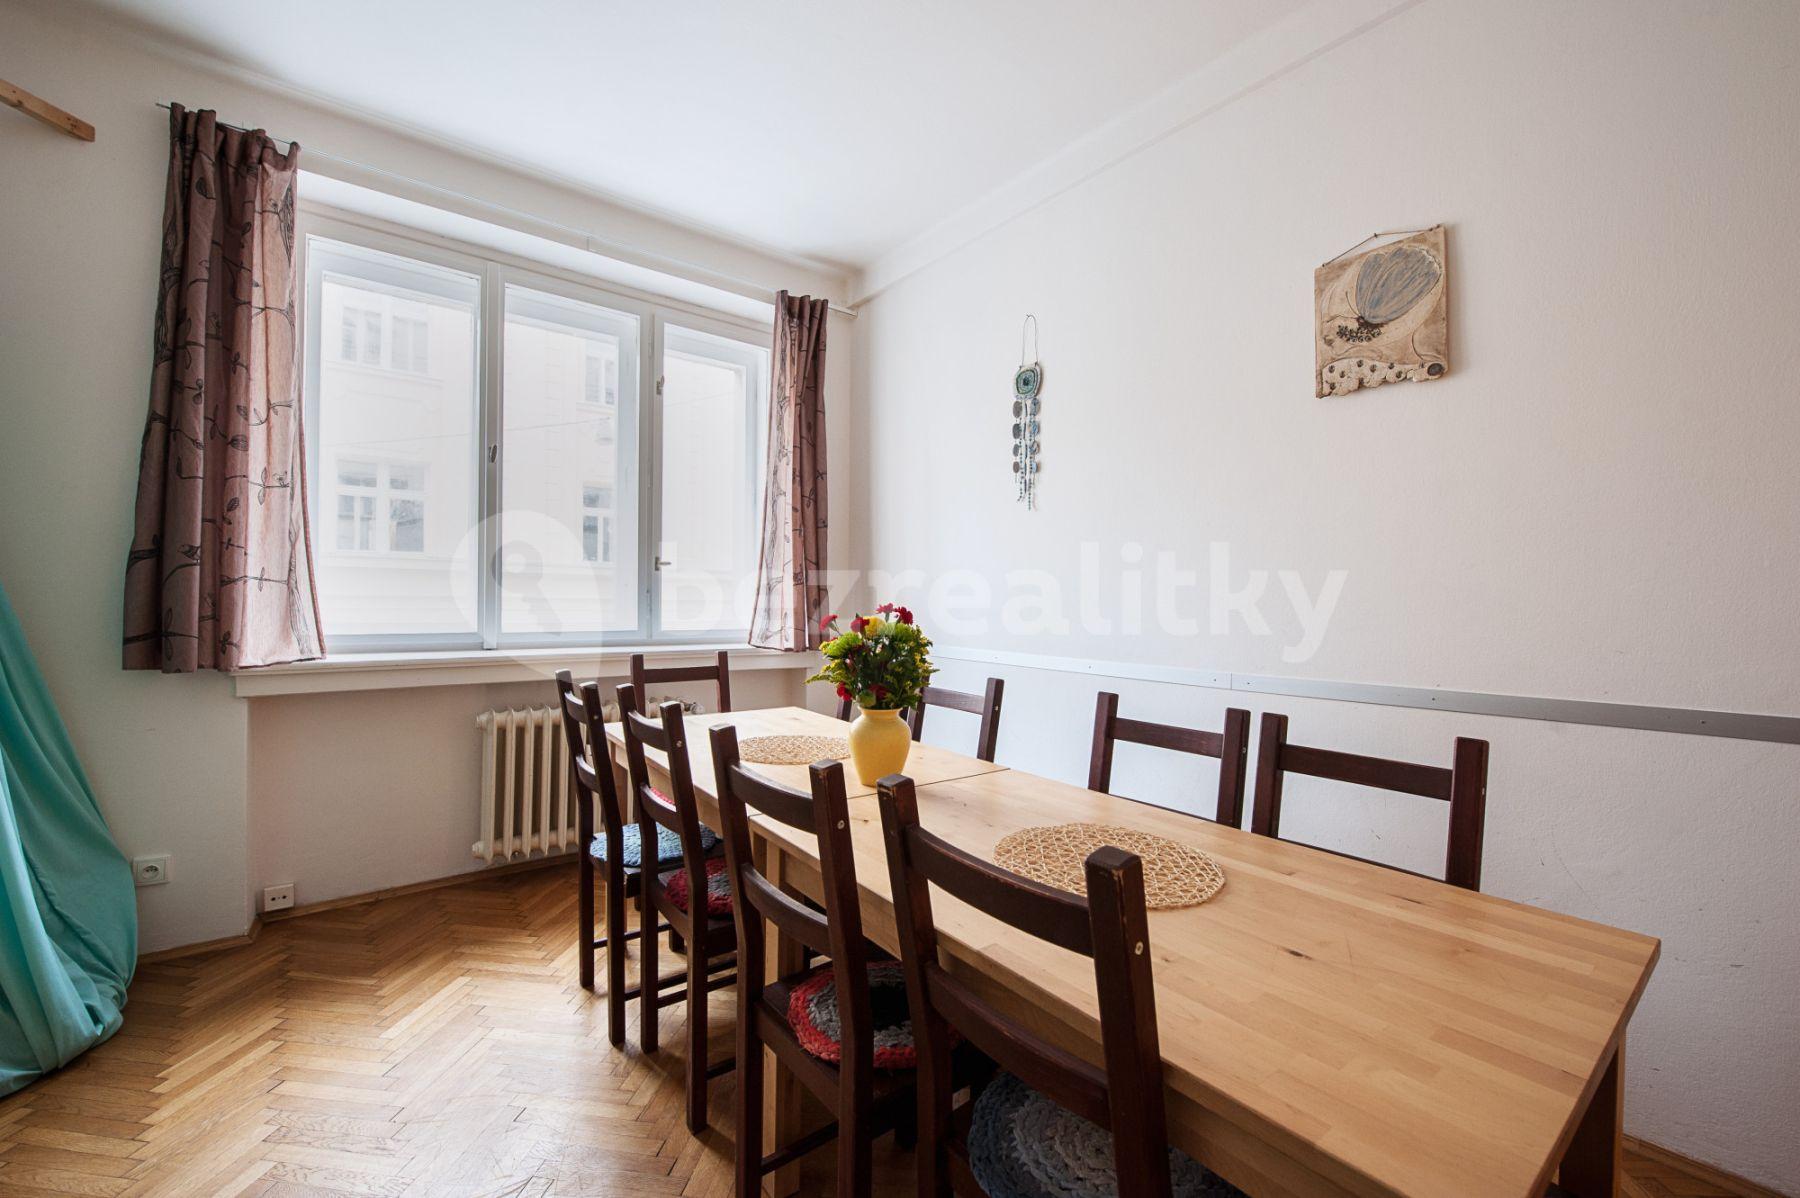 3 bedroom flat to rent, 86 m², Vrázova, Prague, Prague